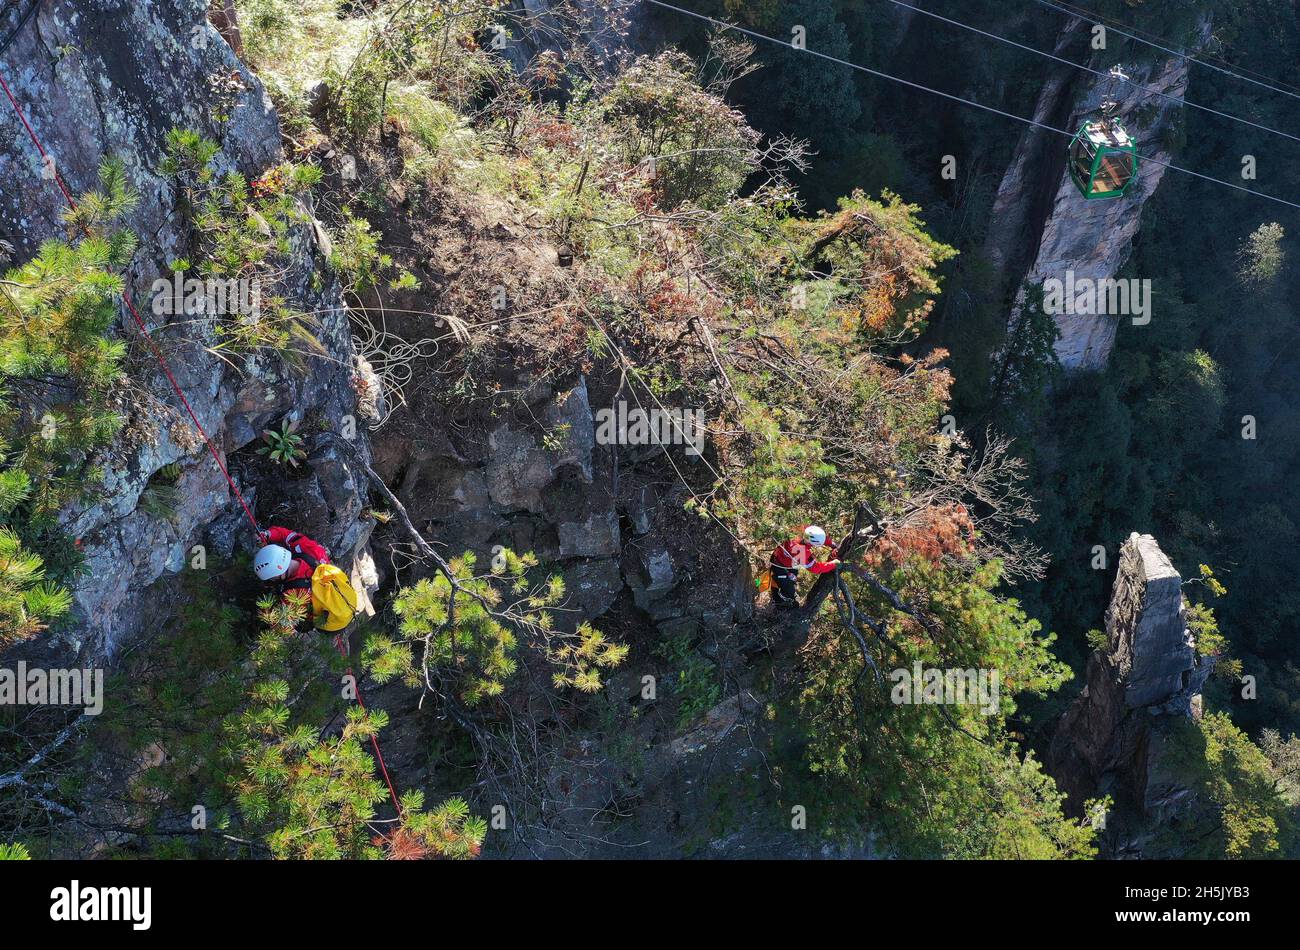 ZHANGJIAJIE, 10 novembre 2021 (Xinhua) -- photo aérienne prise le 10 novembre 2021 montre des membres d'une équipe de secours d'urgence qui ont fait descendre une falaise pour recueillir des litières lors d'un exercice d'urgence au village de Huangshizhai de Wulinguyuan, Zhangjiajie, dans la province du Hunan en Chine centrale.Les membres de cette organisation à but non lucratif collectent régulièrement des litières sur les falaises abruptes de Wulingyuan et de ses environs, site pittoresque inscrit sur la liste du patrimoine naturel mondial de l'UNESCO.(Xinhua/Zhao Zhongzhi) Banque D'Images